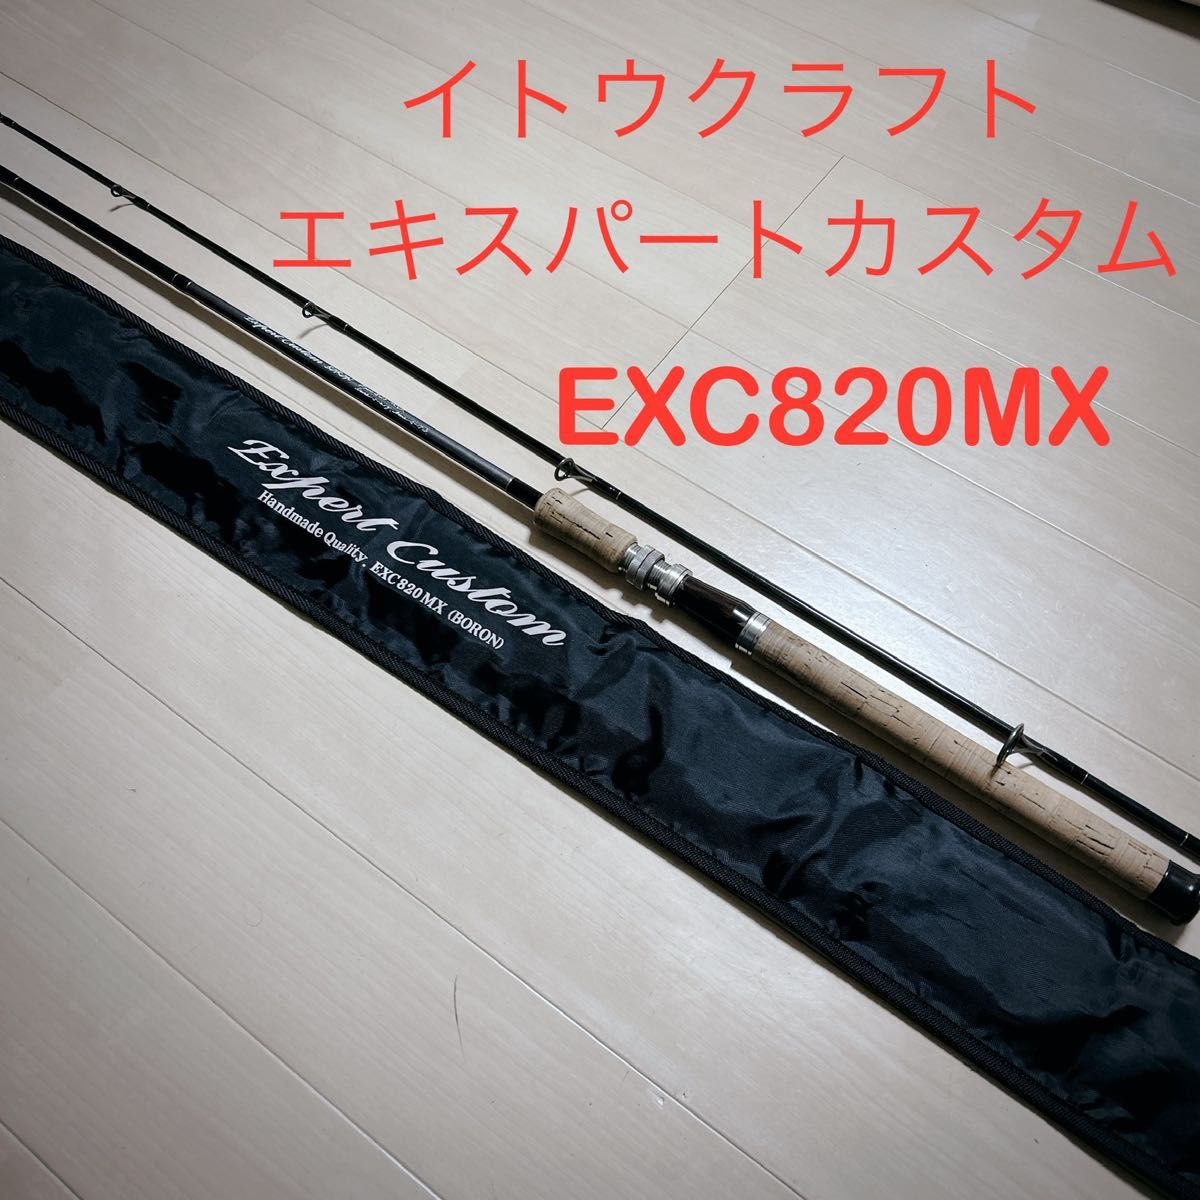 イトウクラフト エキスパートカスタム EXC820MX トラウト　渓流 サクラマス 本流 Ito craft Japan